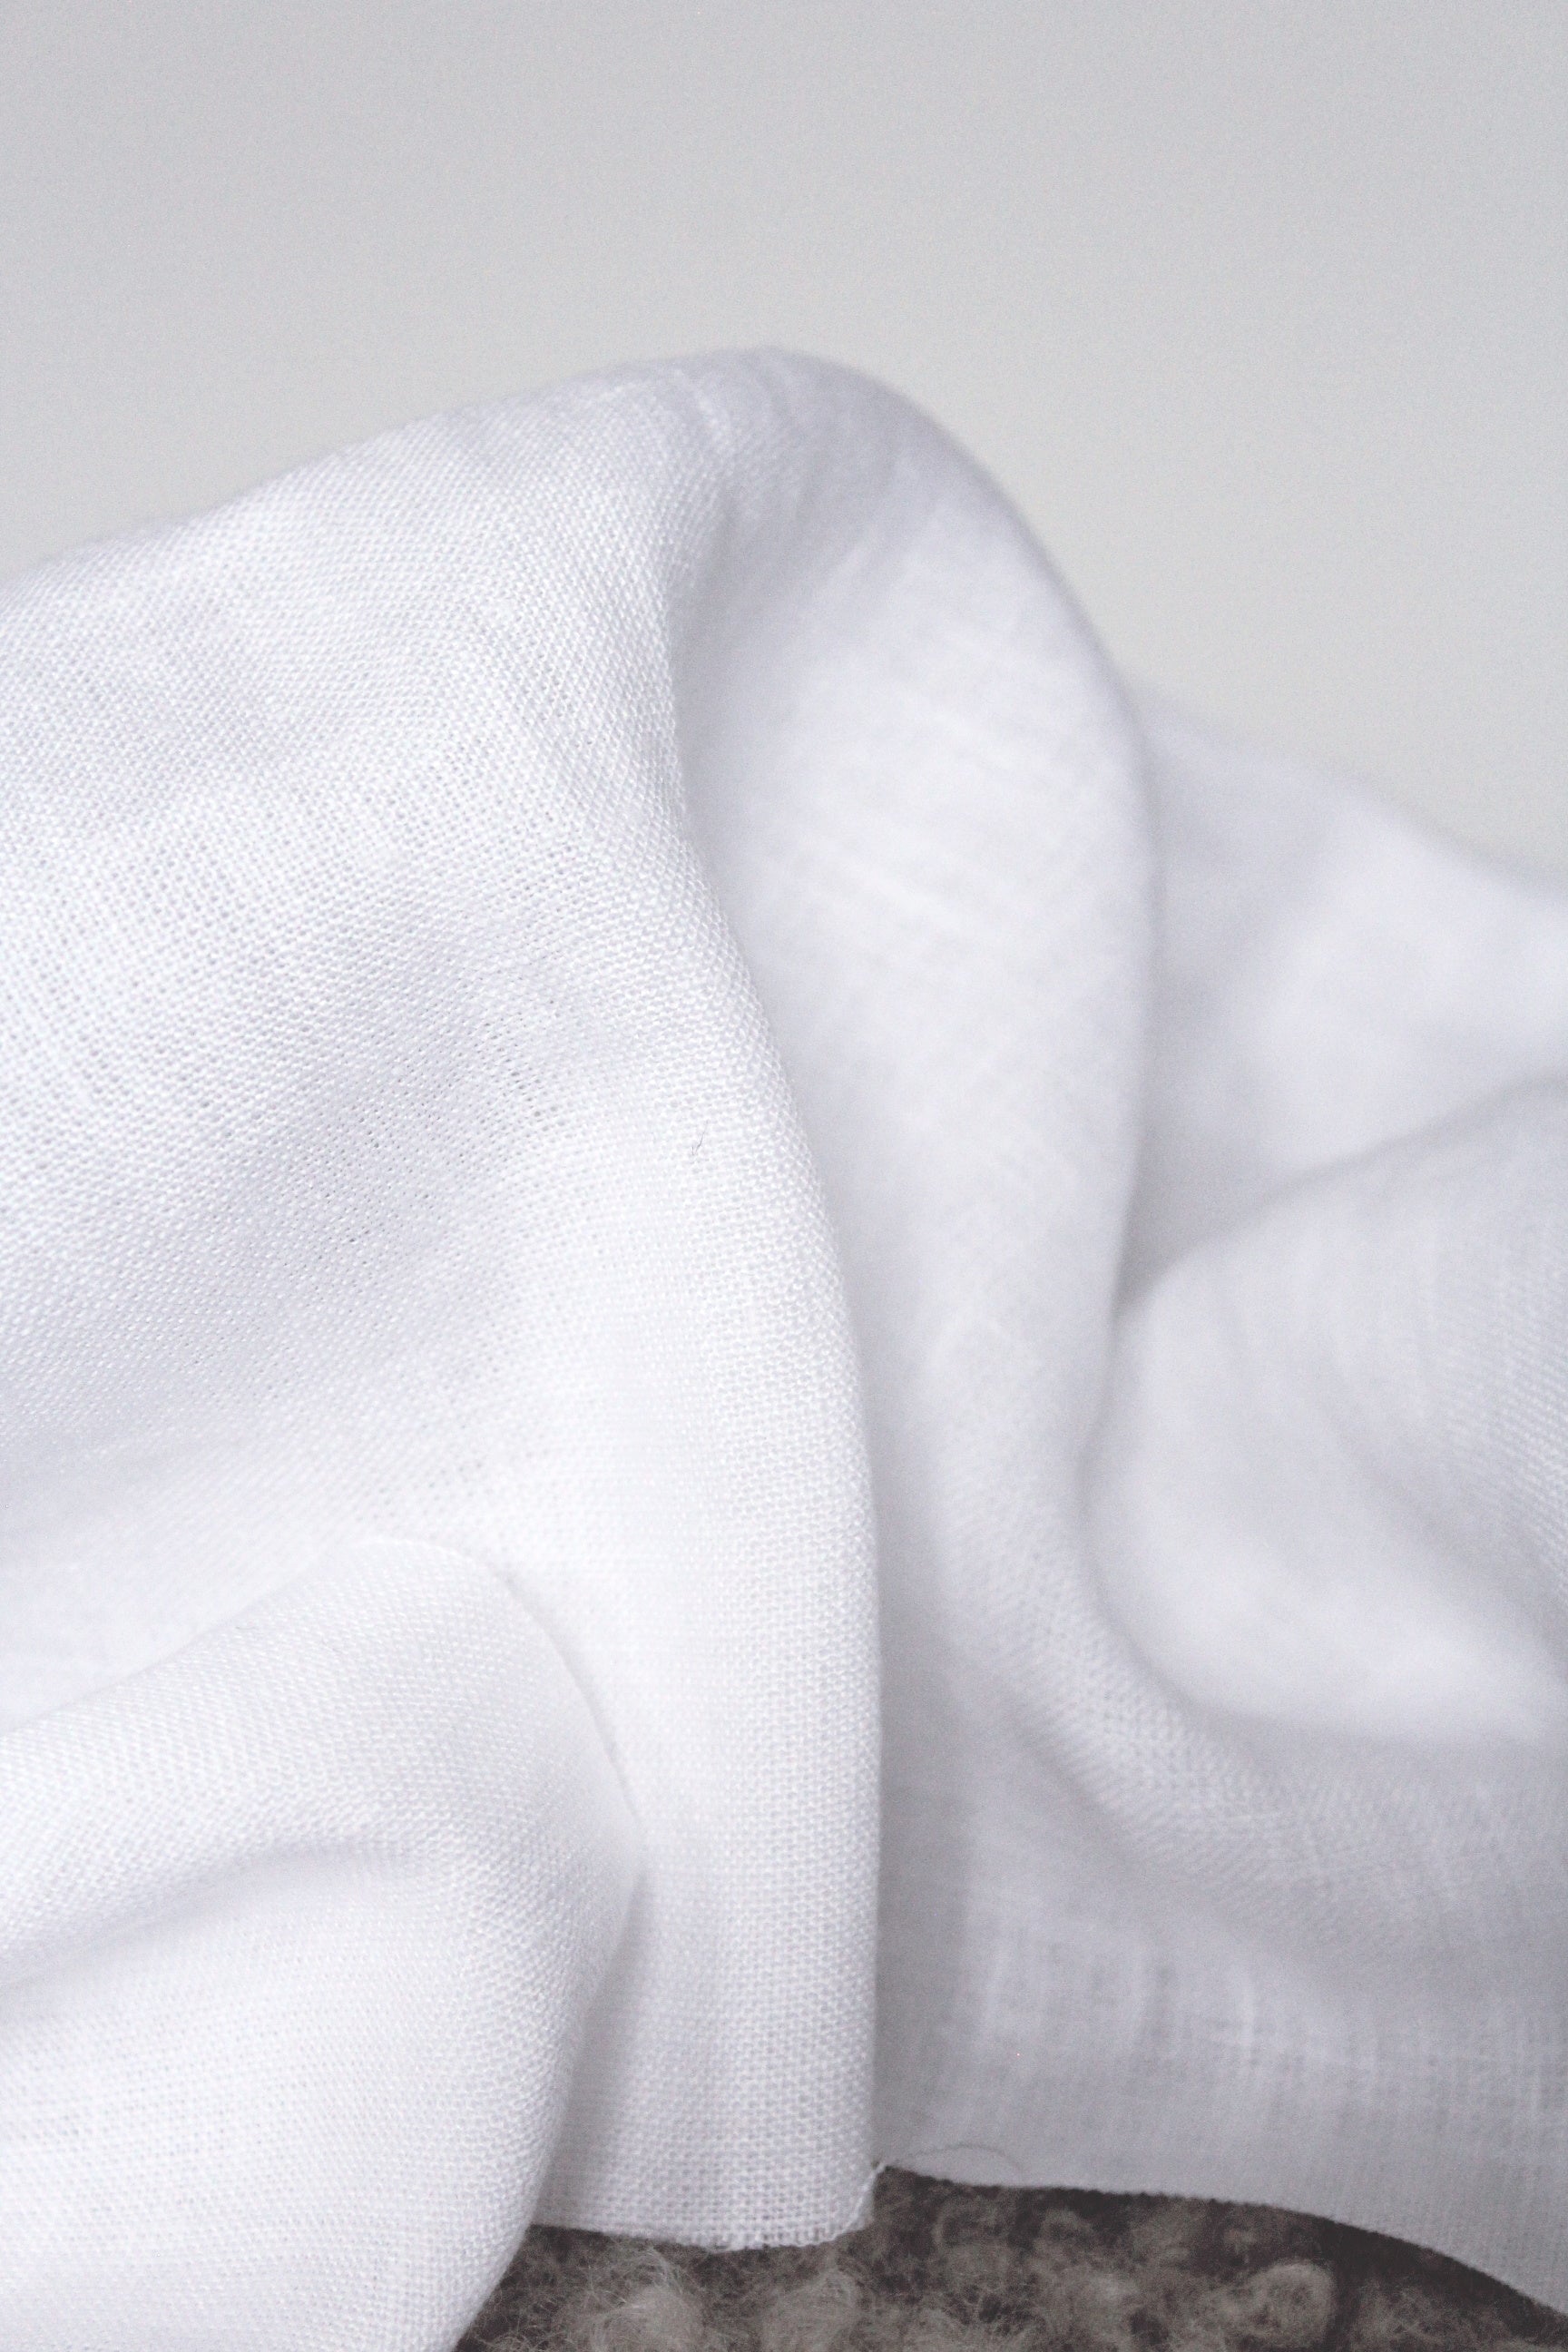 Siena White Linen Fabric - AVLEN